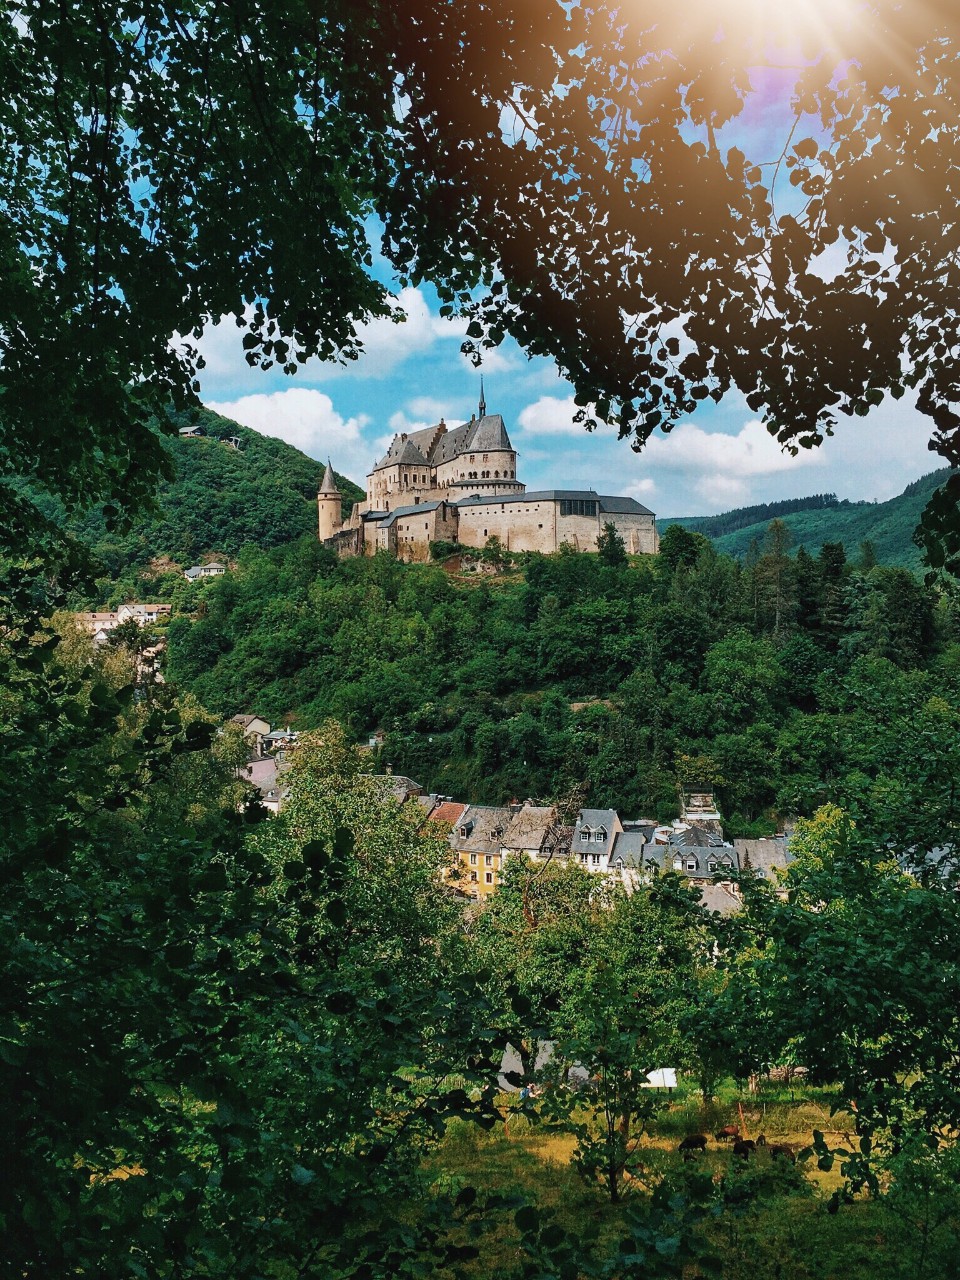 Le château de Vianden, à part d'être l'un des mieux conservés au Luxembourg, est une des destinations touristiques les plus populaires du pays. Coulisse de plusieurs films, le château surplombe des vallées qui l'entourent et livre des vues spectaculaires.